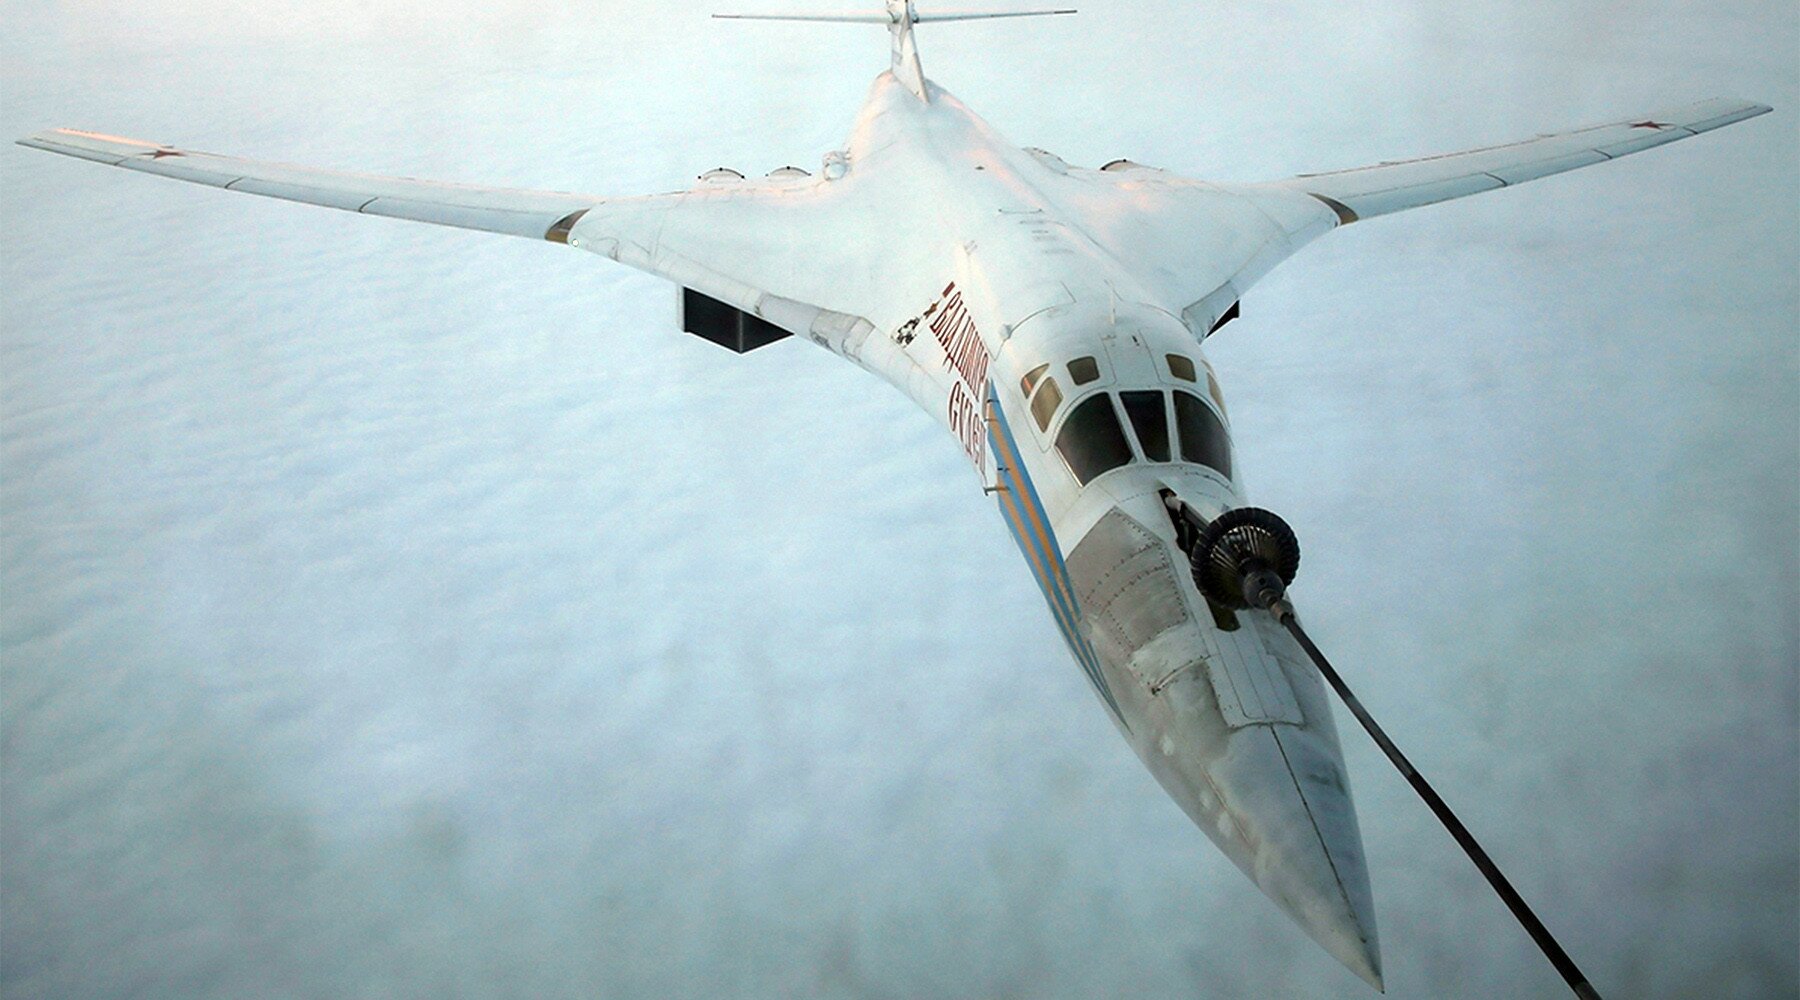 "Достанет везде": какие задачи будет выполнять грозный бомбардировщик Ту-22М3М